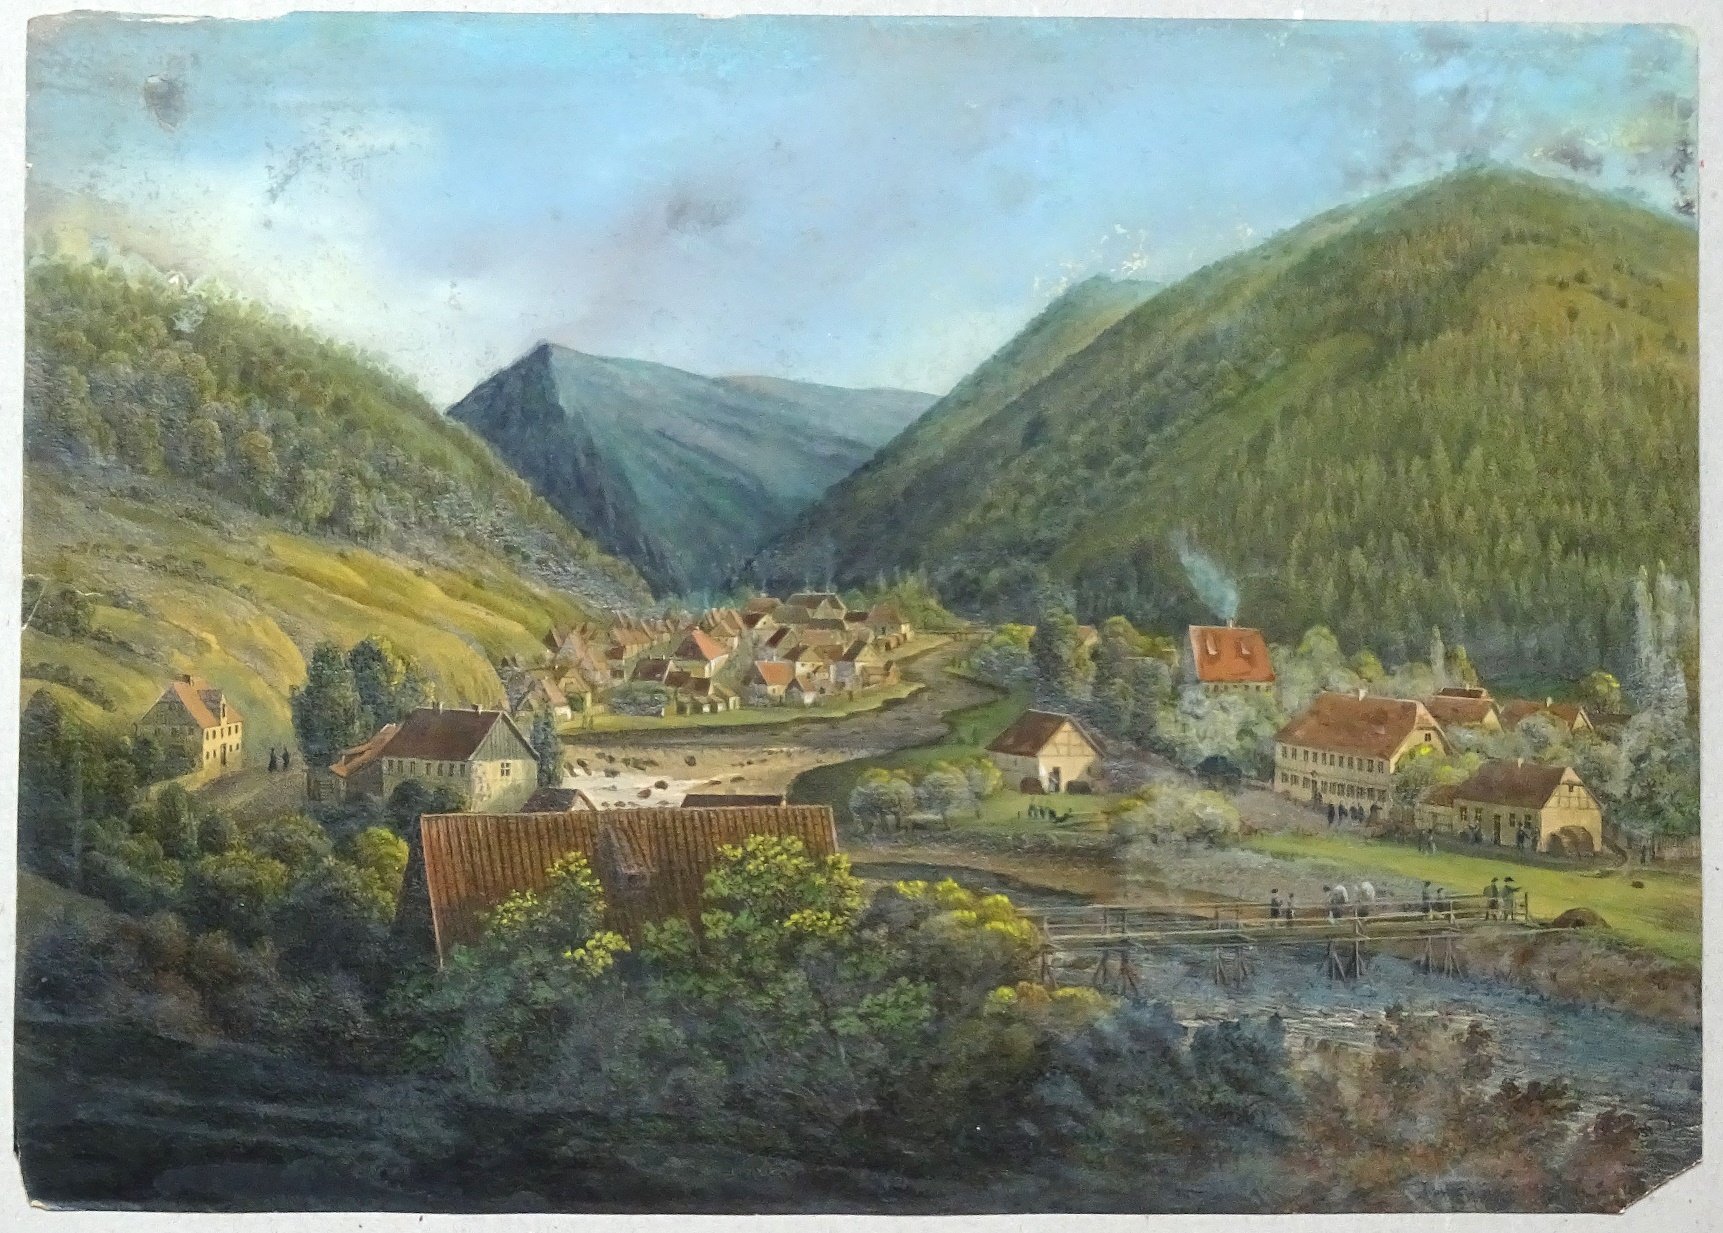 Okertal: Dorf Oker aus der Nähe, 1828 (aus: Schenk "Zwanzig Ansichten") (Schloß Wernigerode GmbH RR-F)